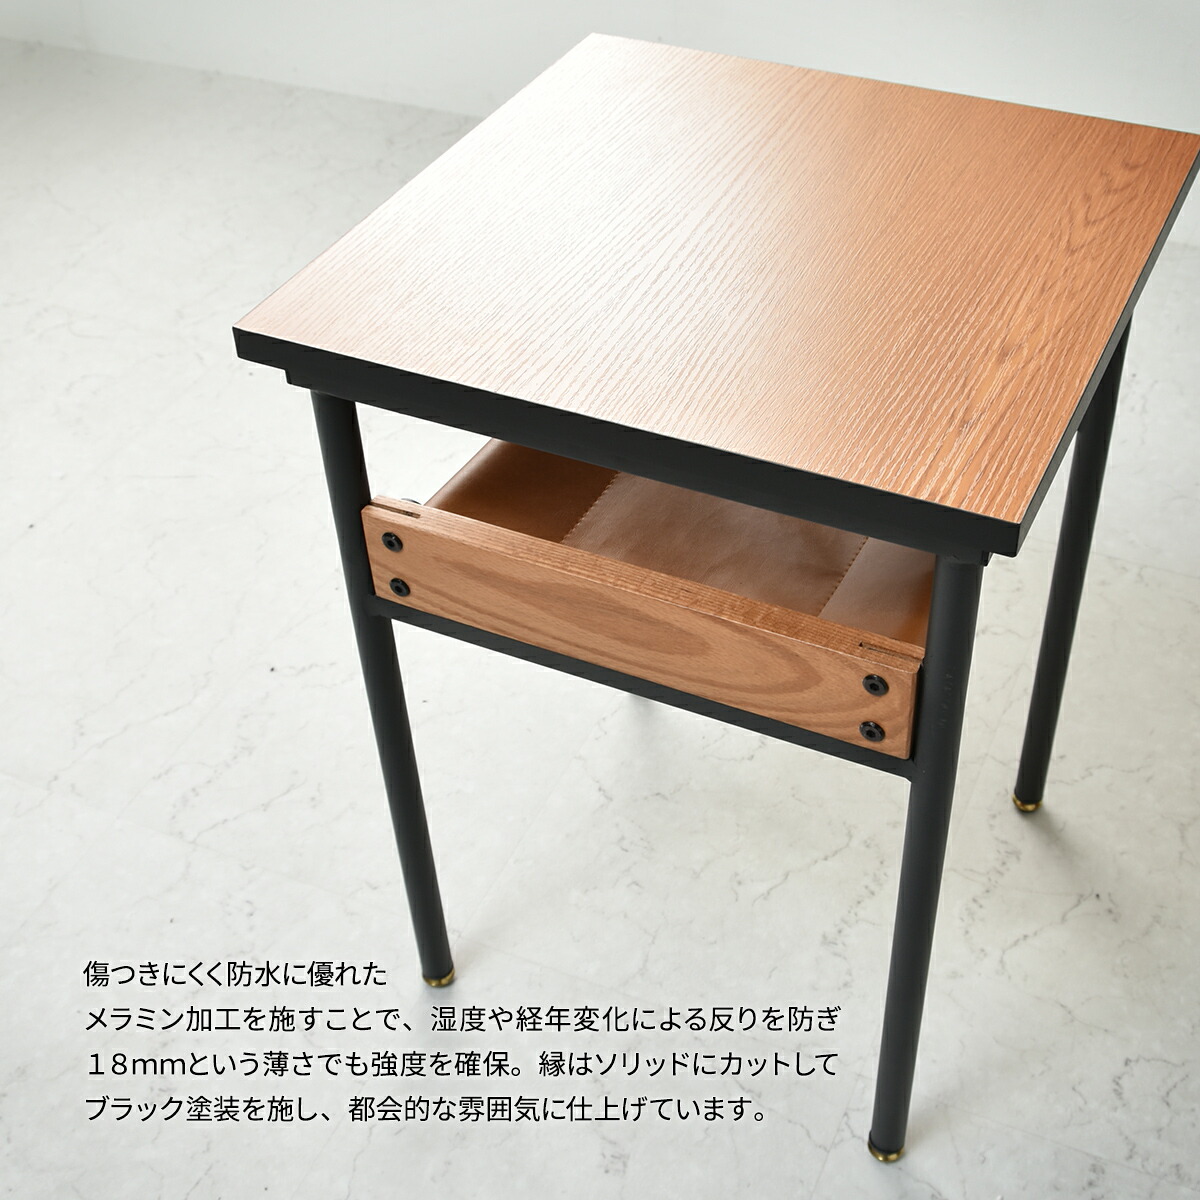 サイドテーブル PAMELA パメラ 正方形 ソファサイドテーブル ナイトテーブル ベッドサイド ローテーブル おしゃれ コンパクト テーブル  ミニテーブル 木製